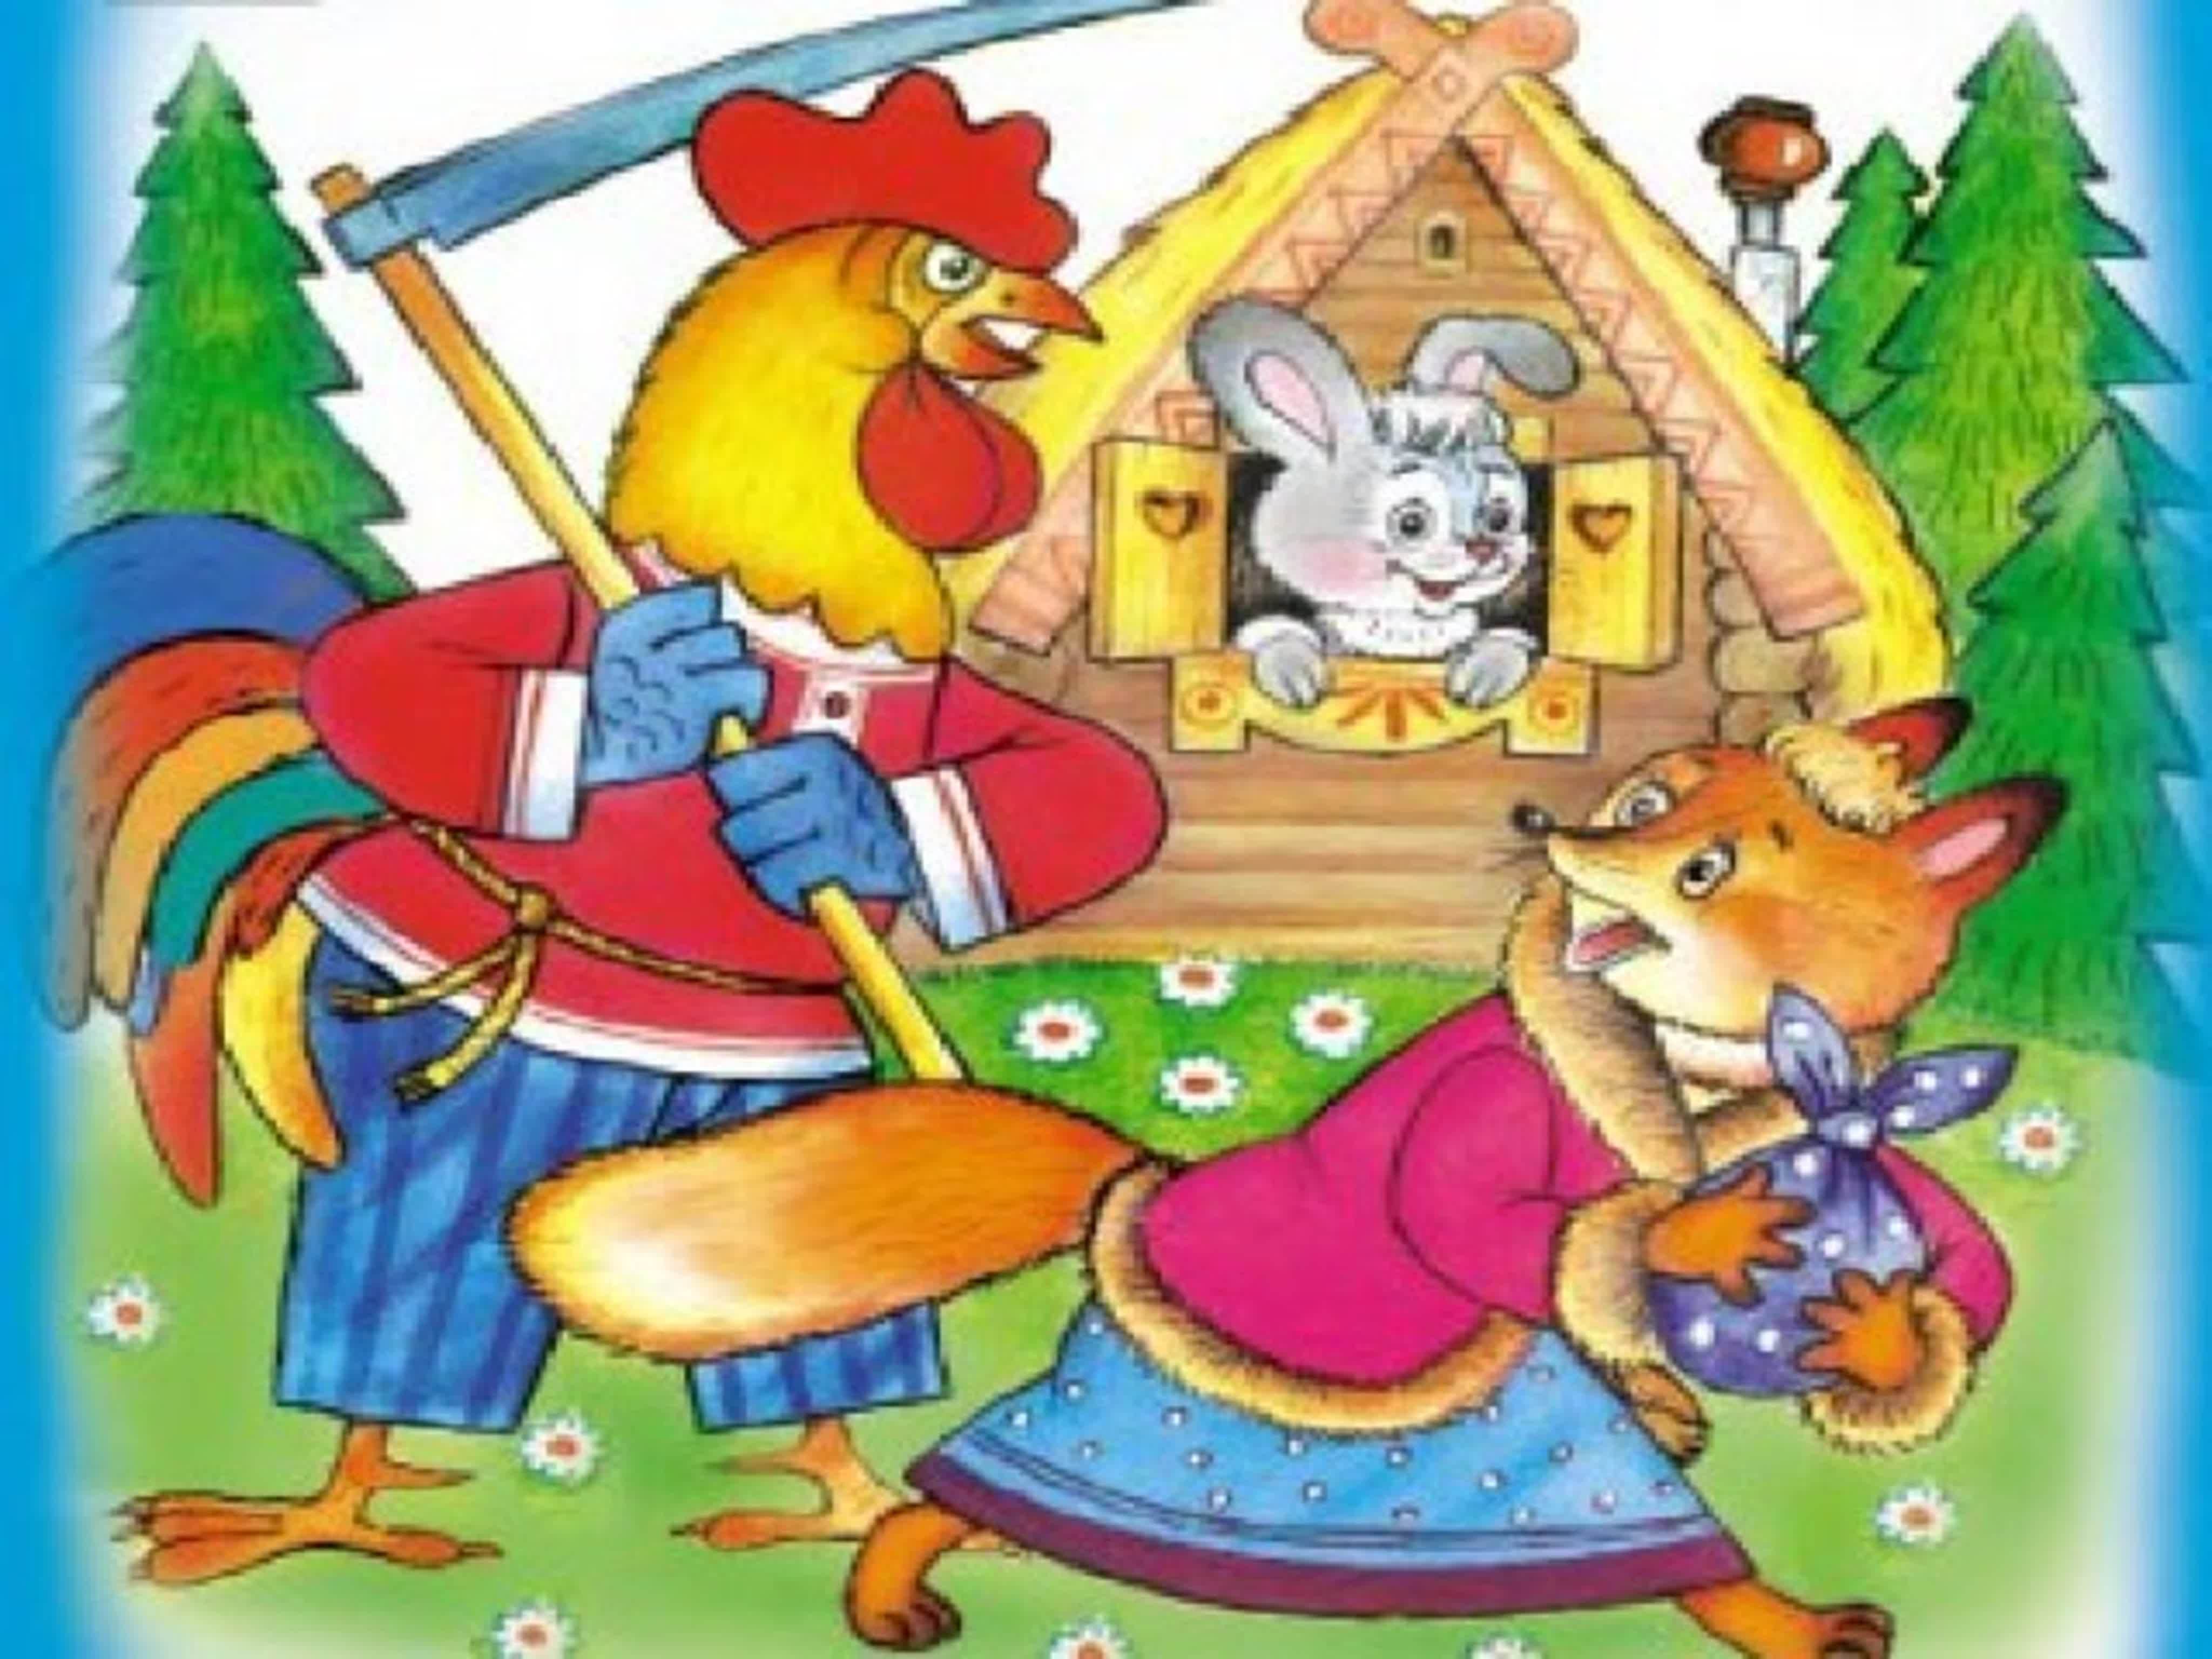 Угадай сказки для детей. Заюшкина избушка петух. Заюшкина избушка петух и заяц. Заюшкина избушка лиса и заяц. Игра Заюшкина избушка для детей.